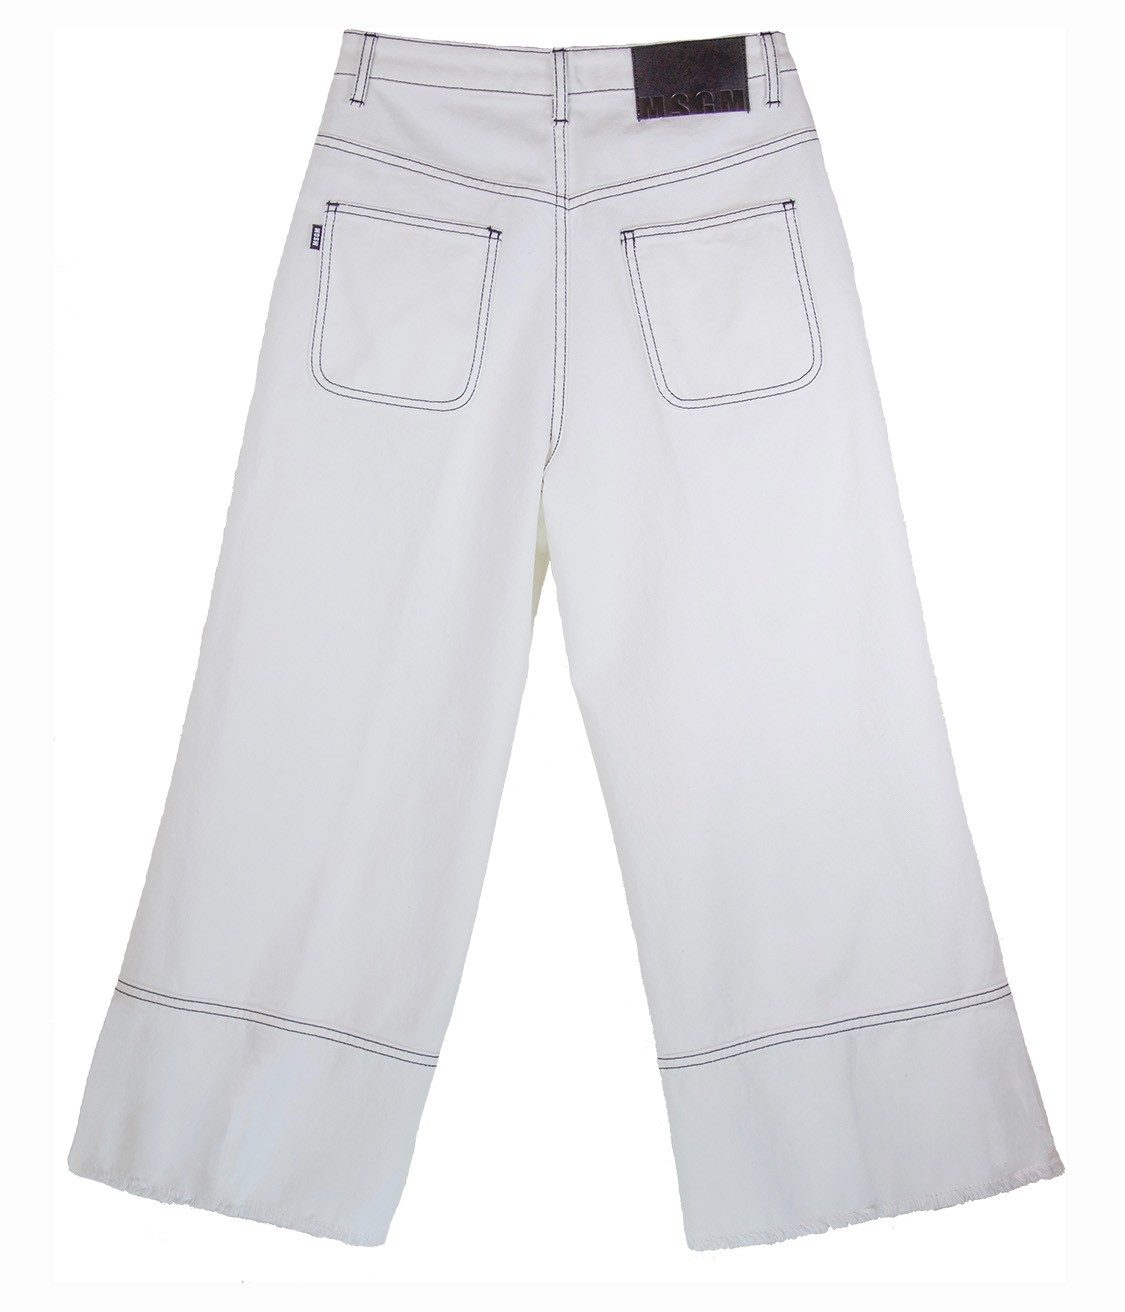 shop MSGM Saldi Pantaloni: Pantaloni MSGM, tipo jeans, bianco, cuciture nere a contrasto, sfrangiati infondo, due tasche davanti e due dietro, chiusura davanti con bottone e zip, gamba ampia.

Composizione: 100% cotone. number 1149